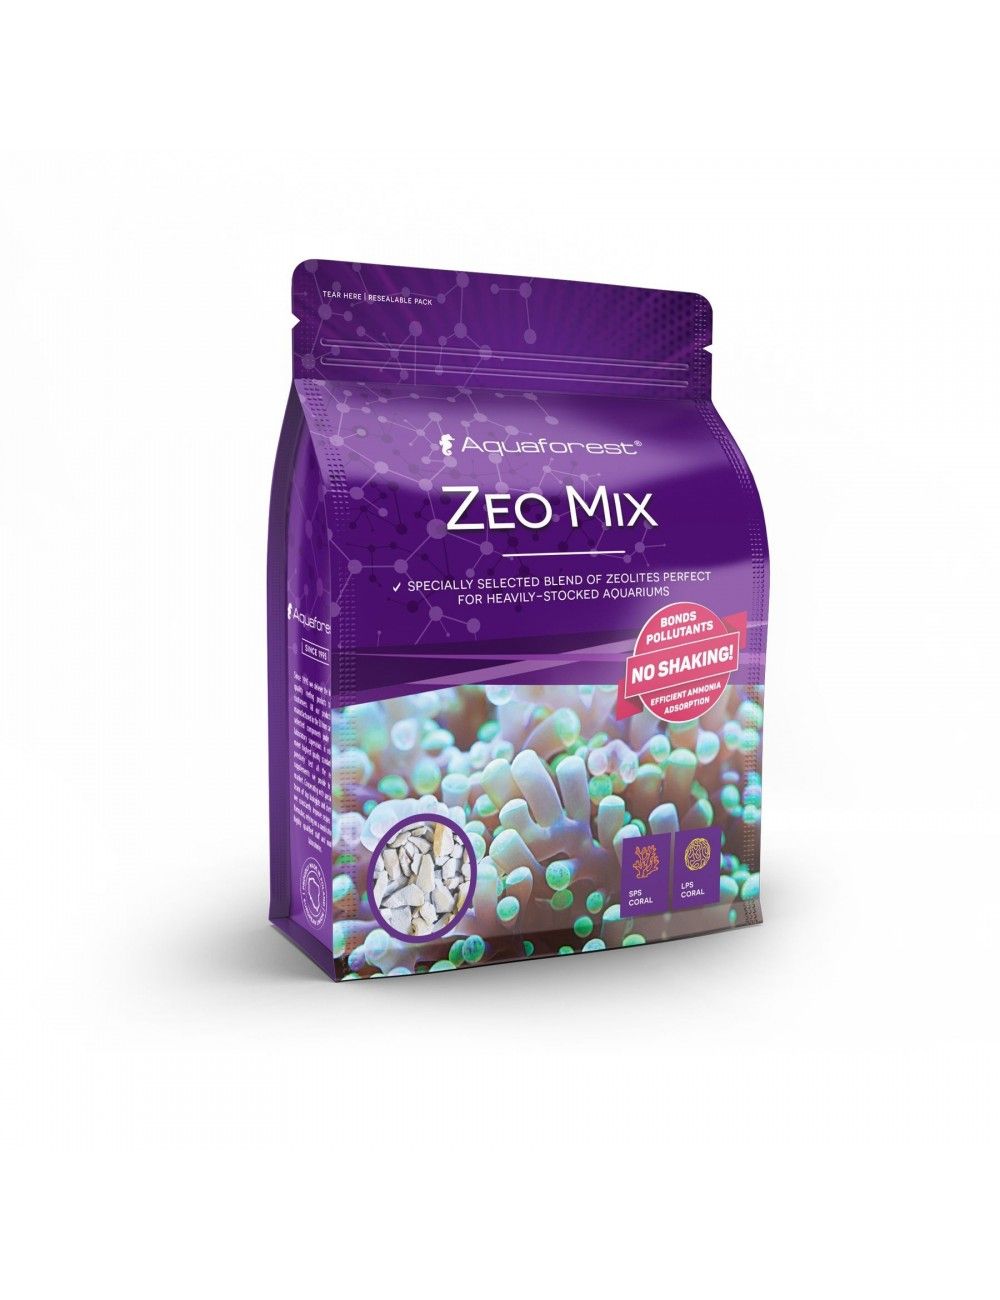 AQUAFOREST - Zeomix - 1kg - Zéolites pour aquarium